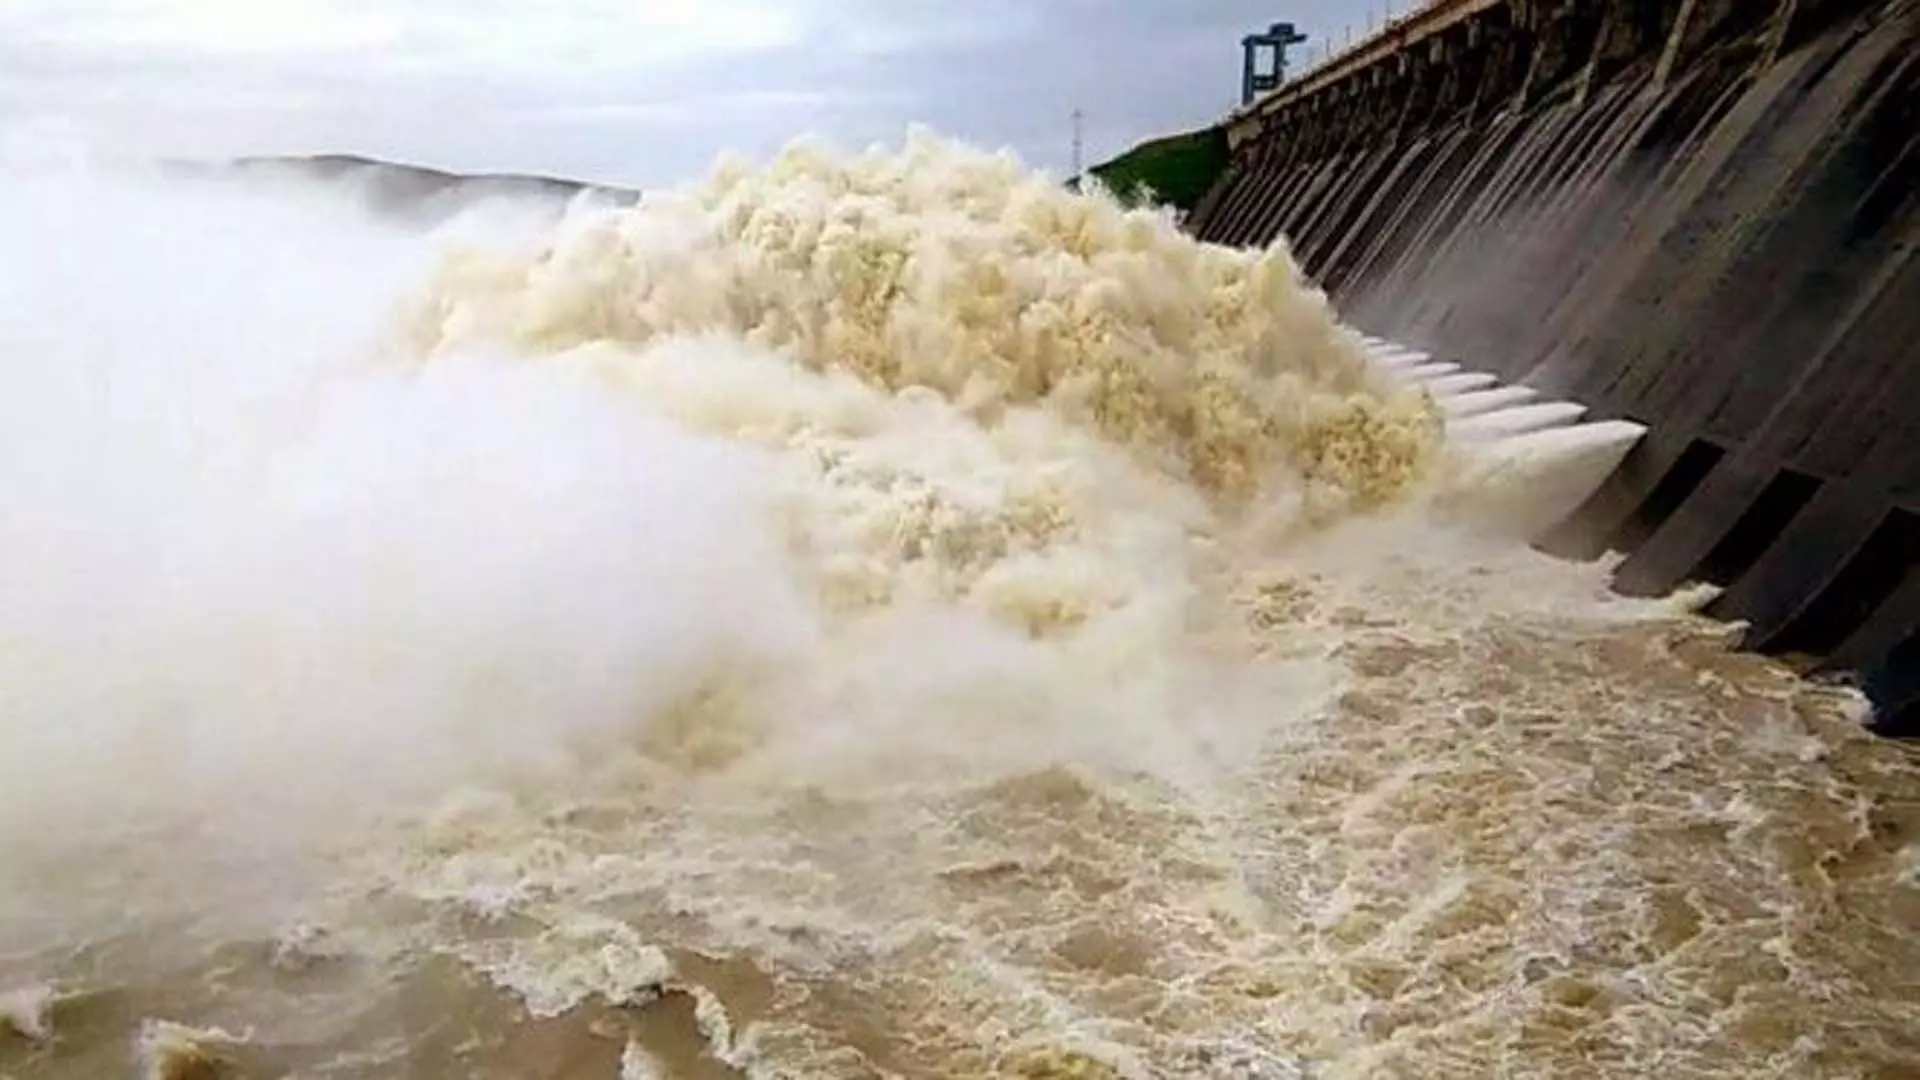 Hirakud dam के अधिकारियों ने पानी बंद कर दिया